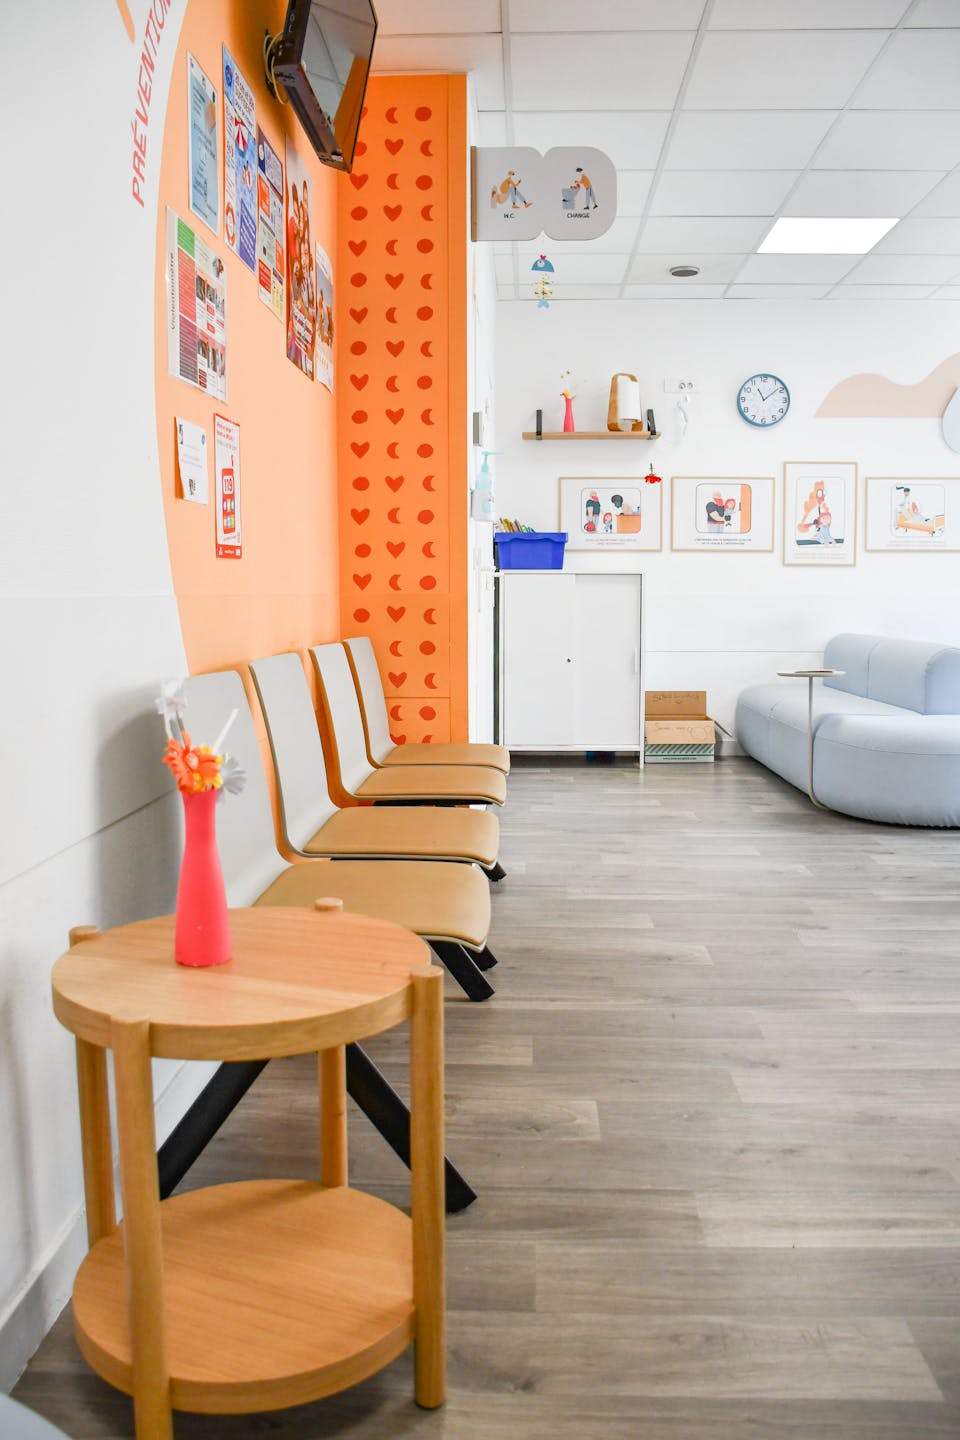 Couloir de la salle d'attente des urgences pédiatriques du CHU De Montpellier, possédant des assises.